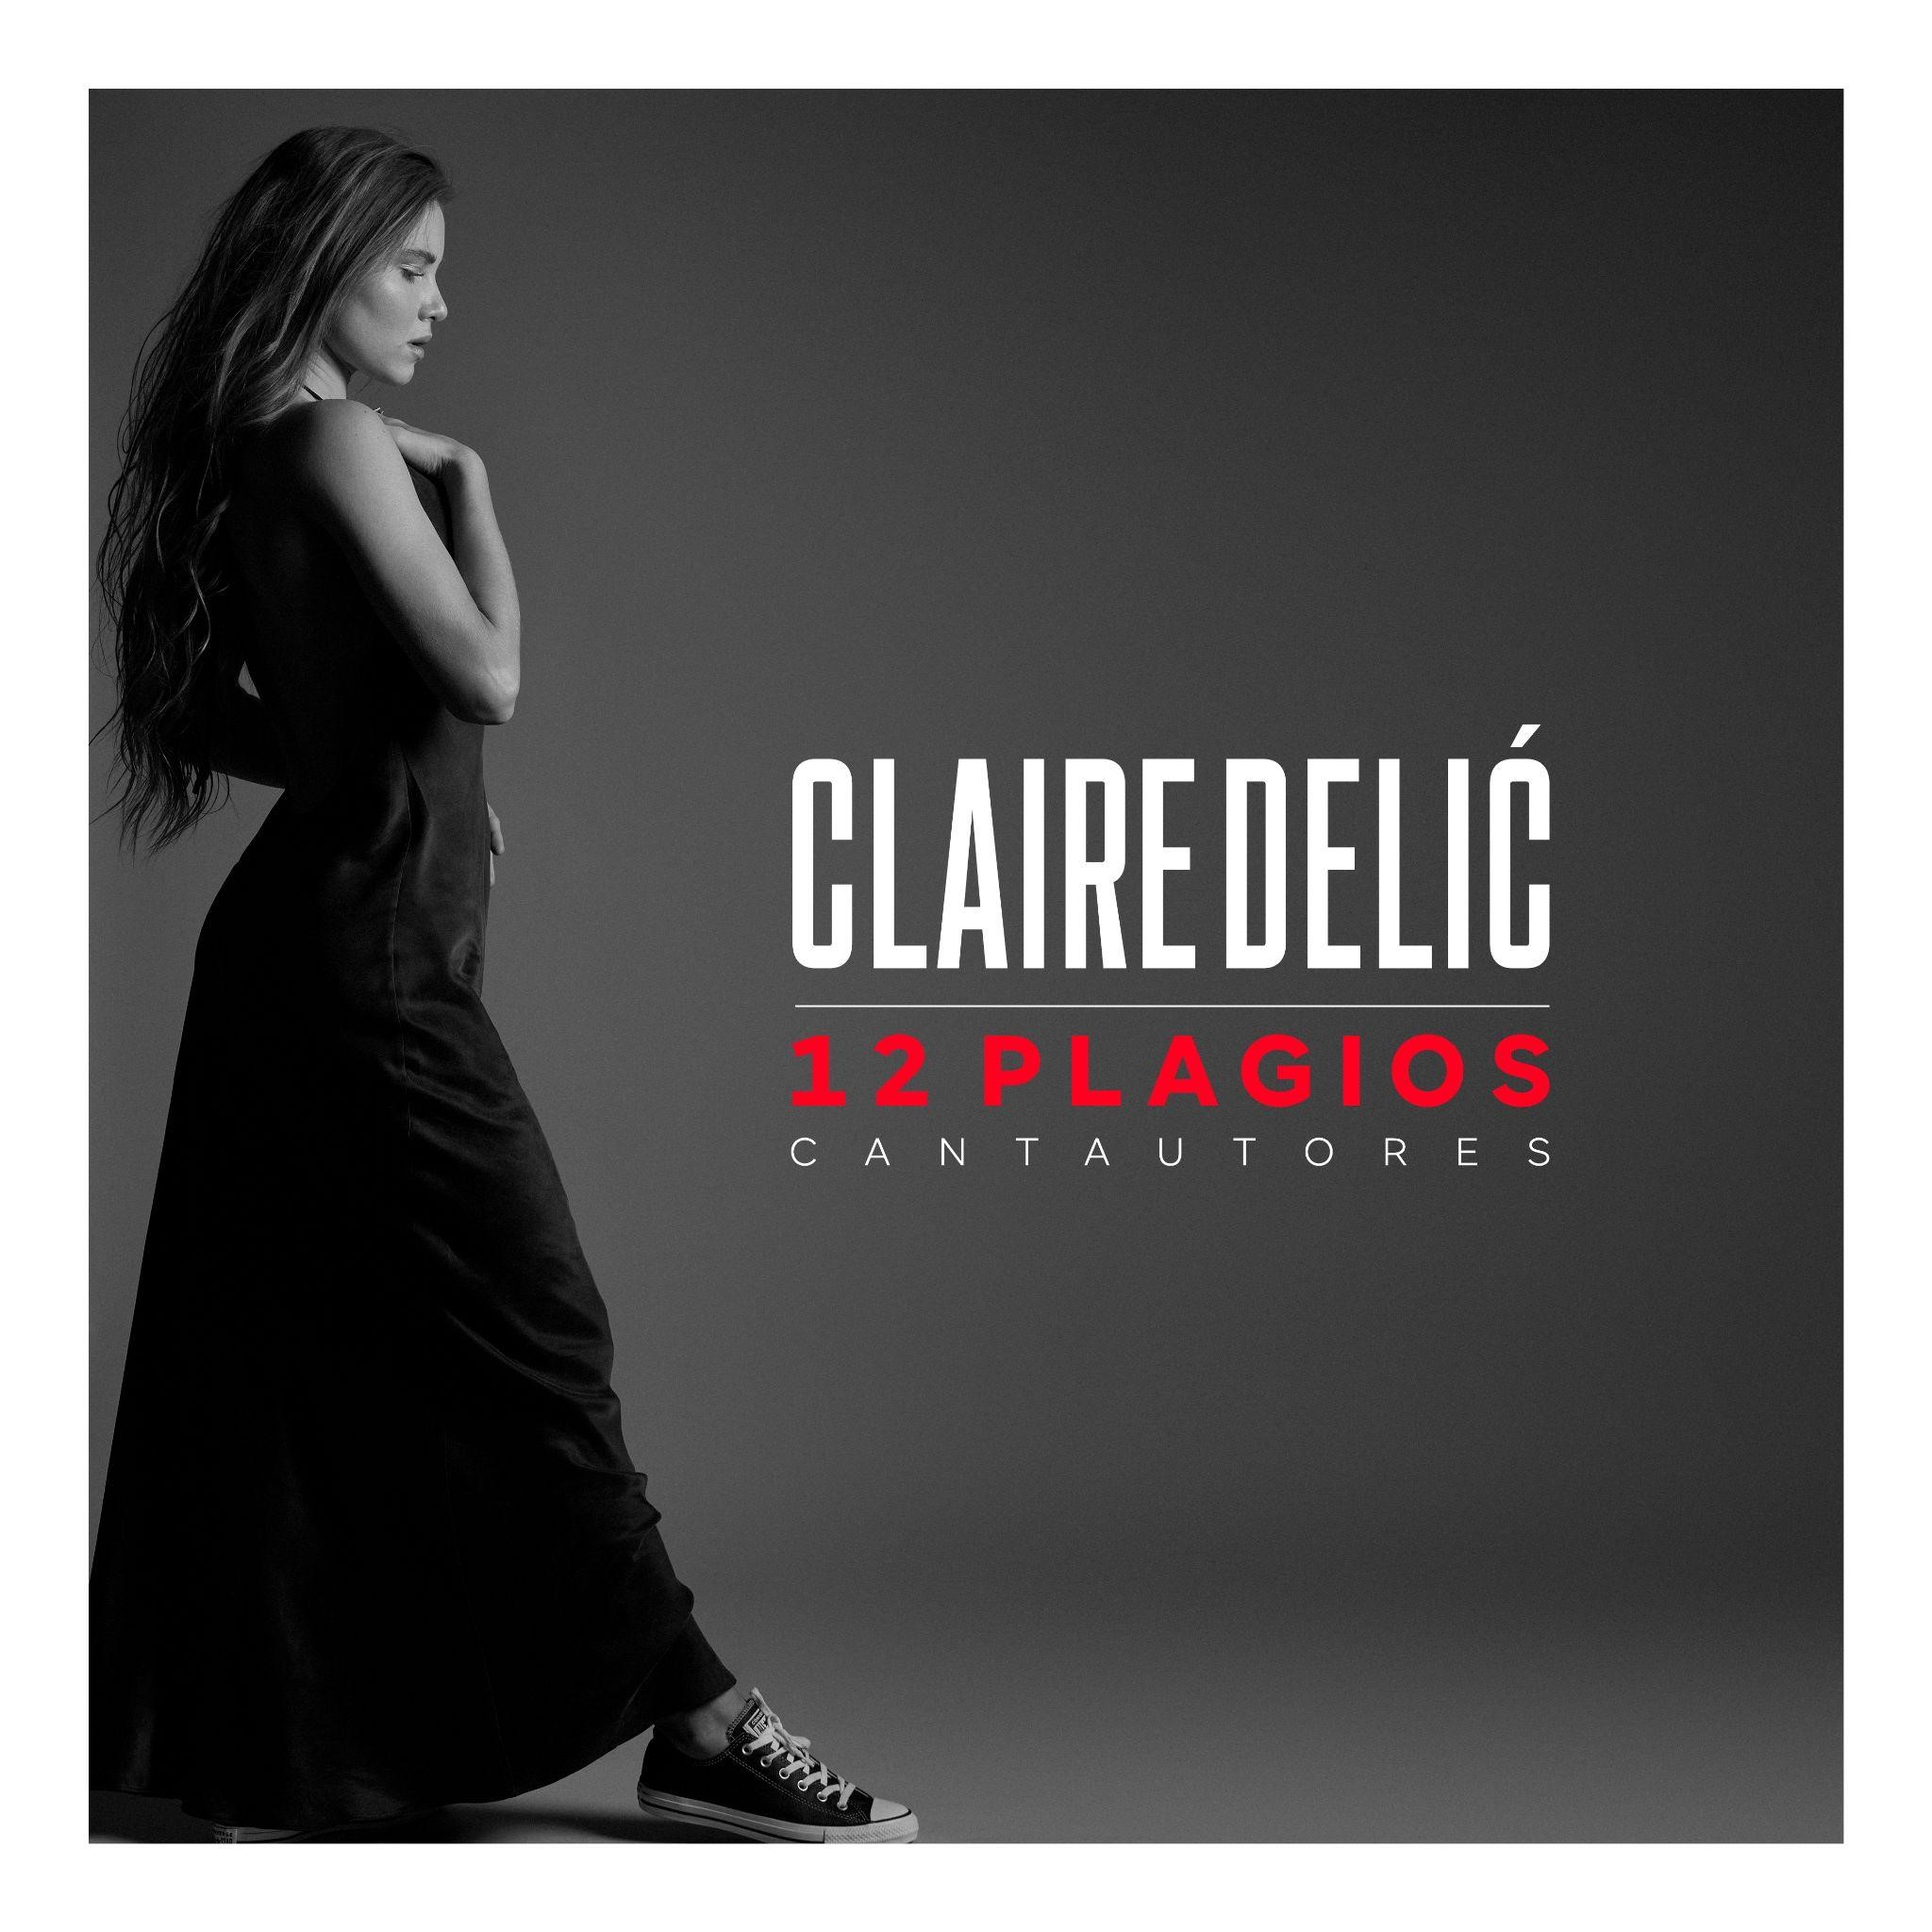 Claire Delić Presenta "12 Plagios" su álbum debut en la industria musical La cantante comparte su inmenso talento musical en este proyecto como su carta de presentación